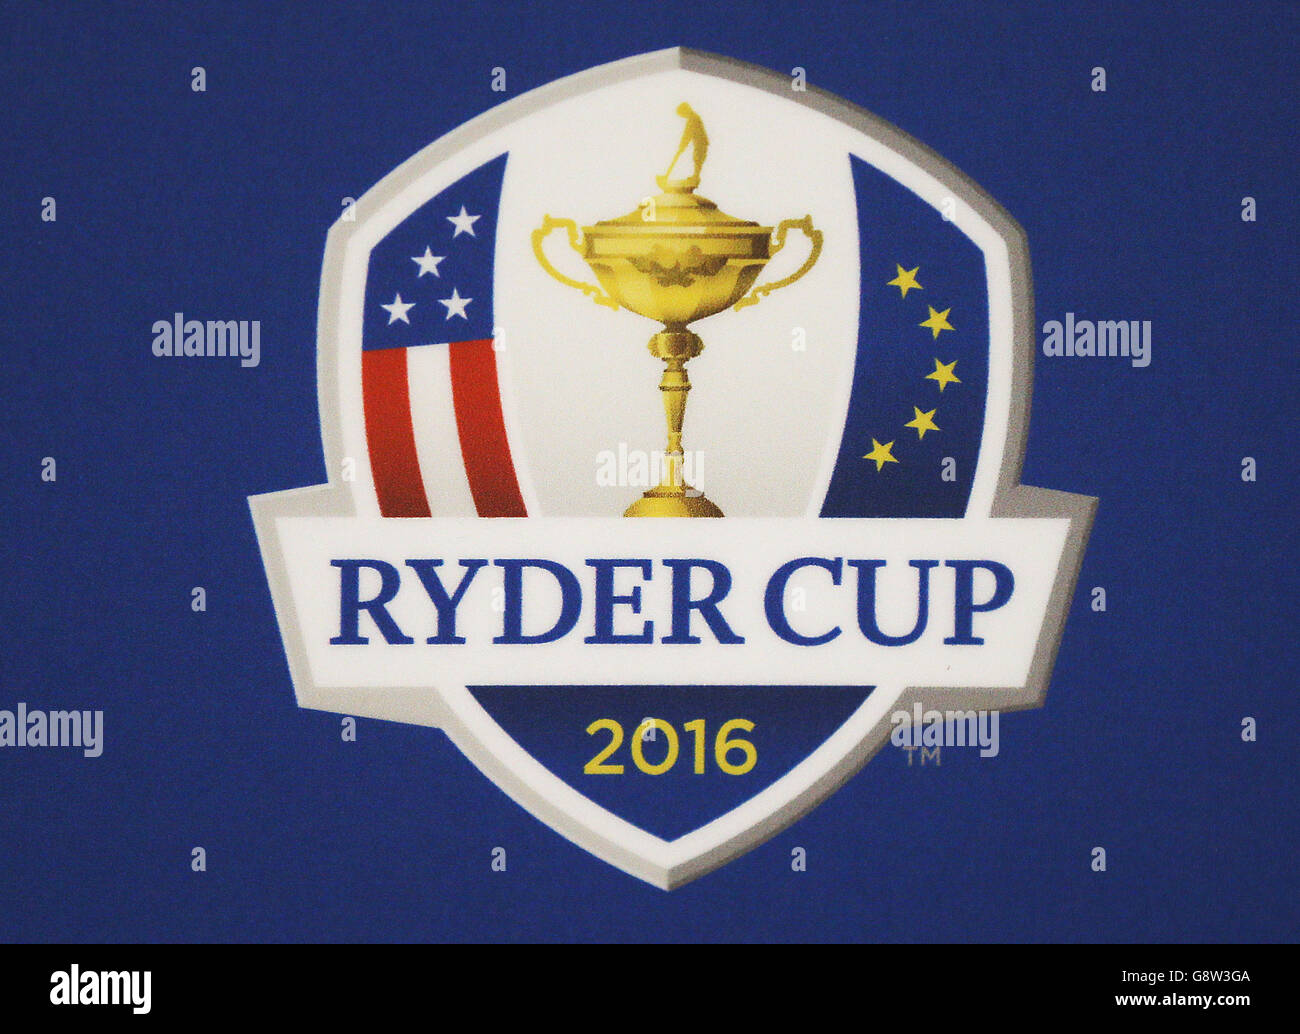 Ryder cup logo Banque de photographies et d'images à haute résolution -  Alamy